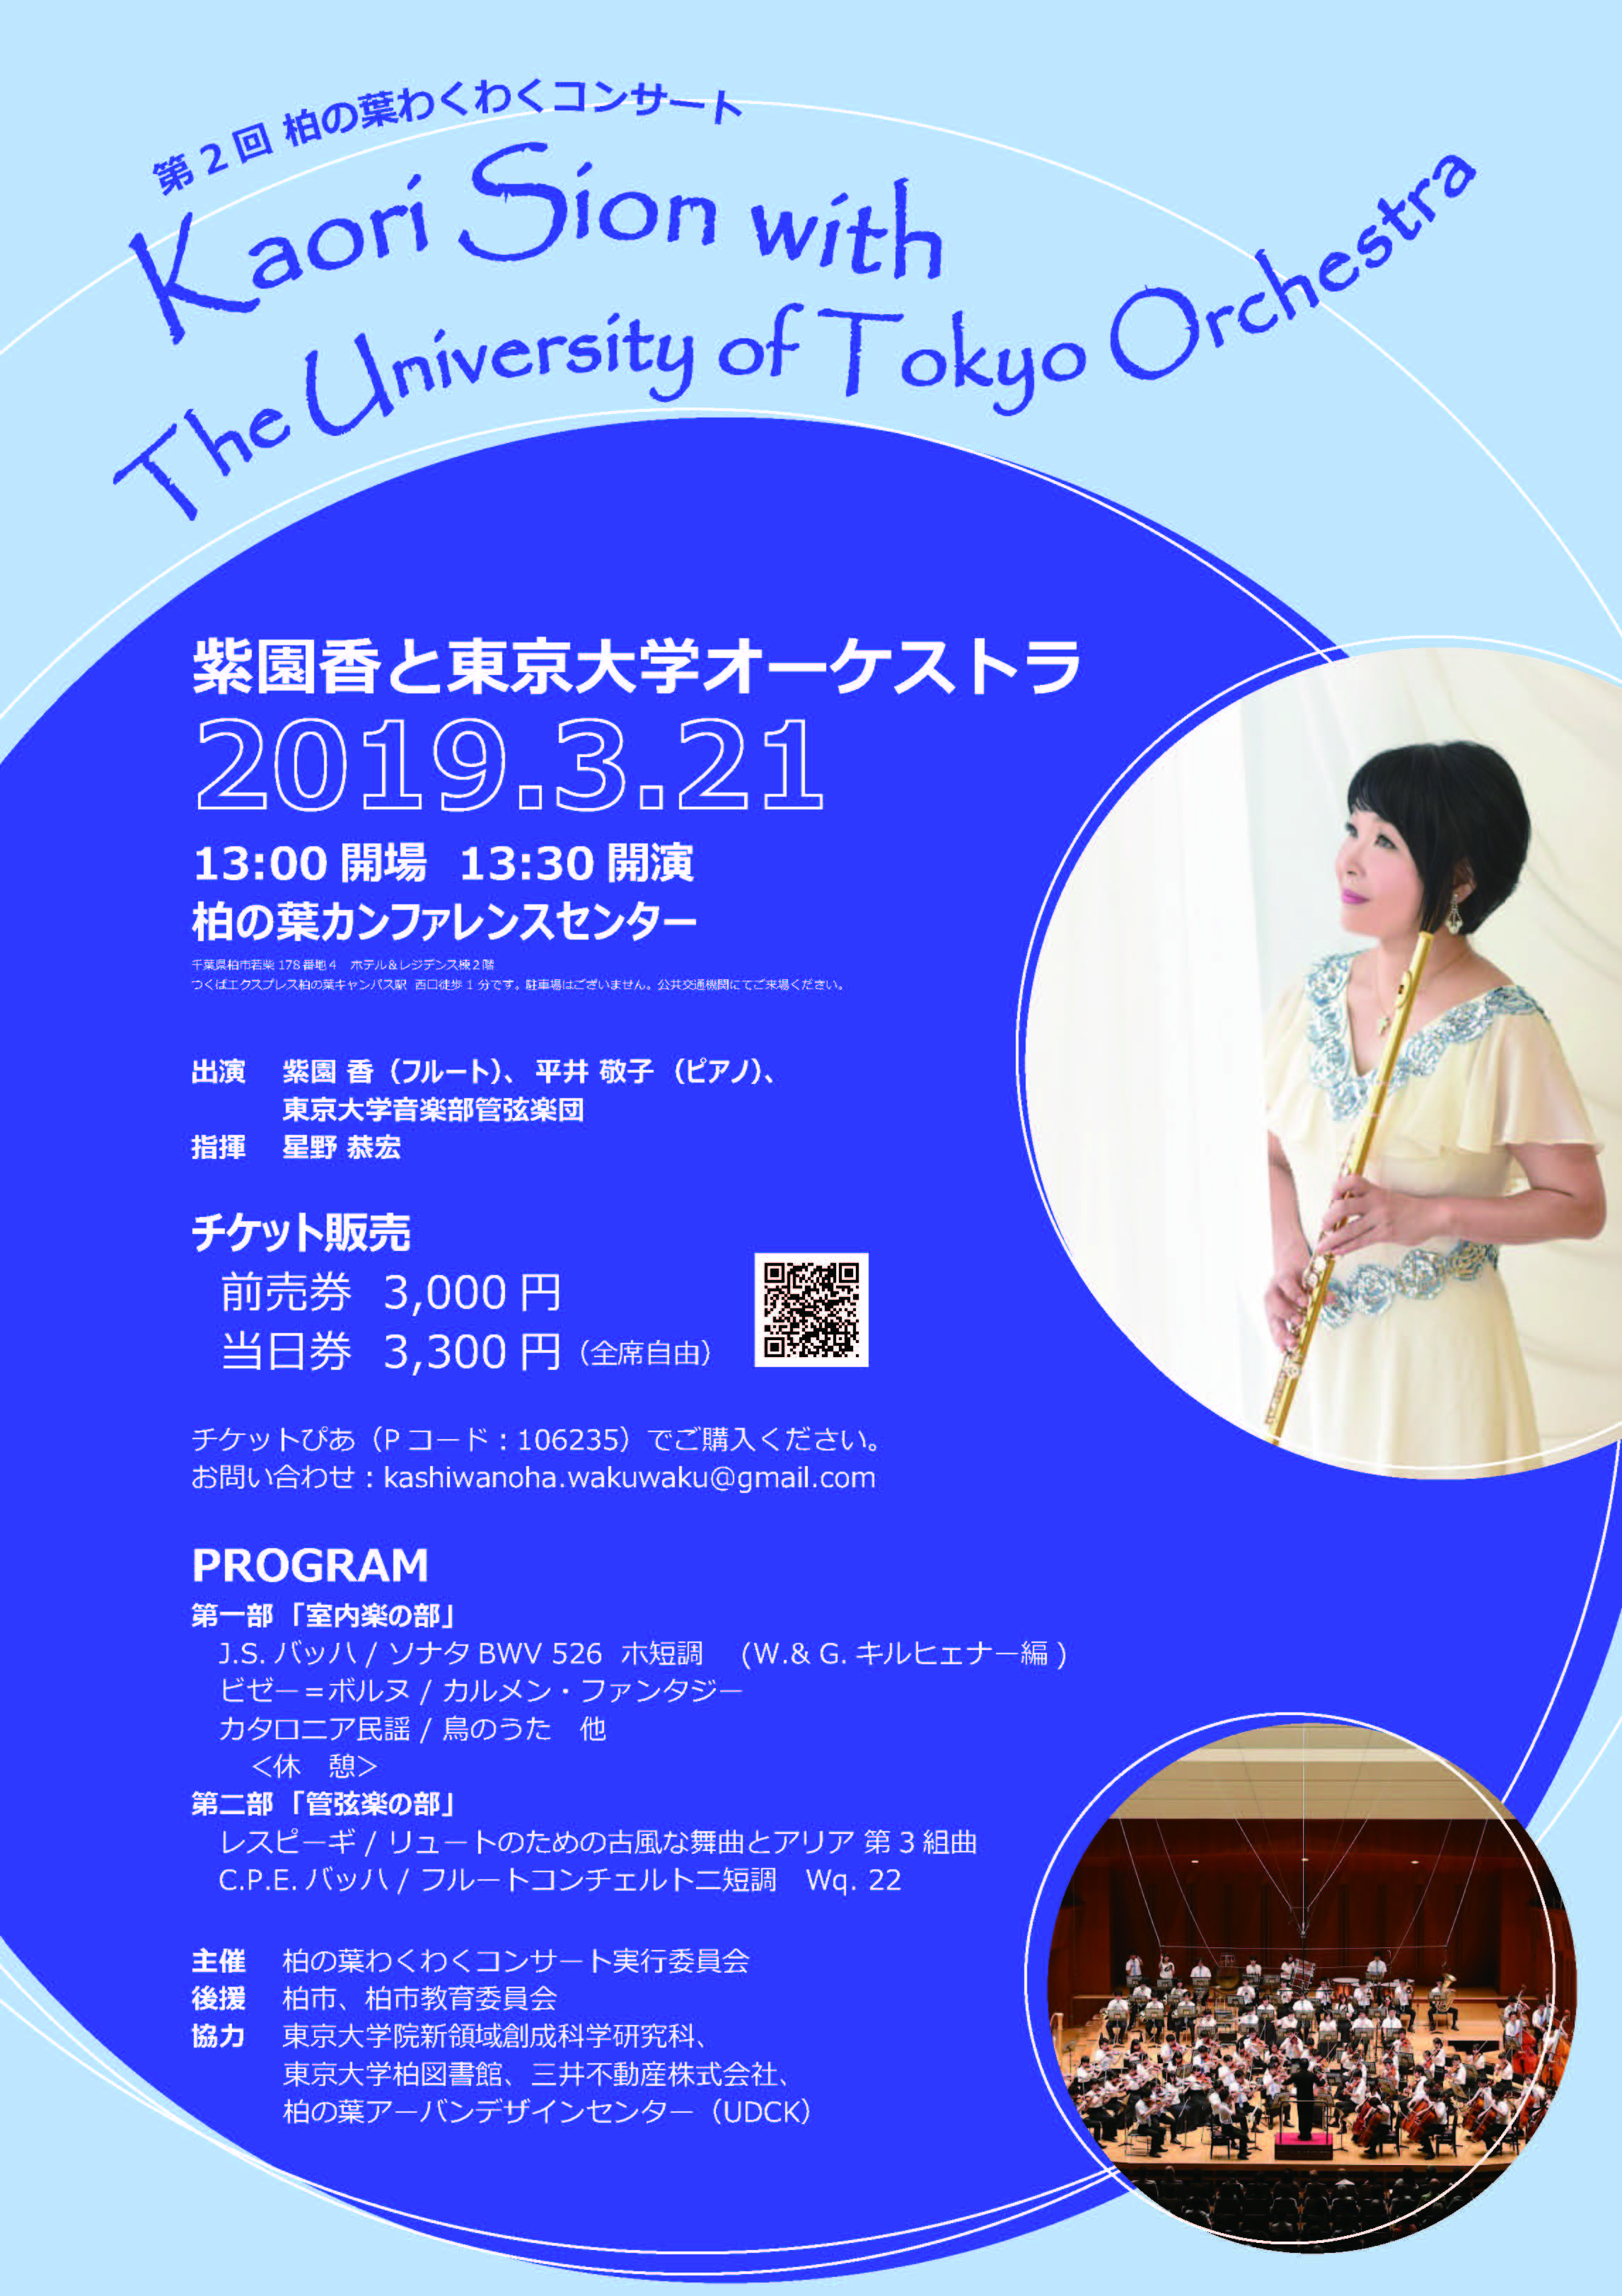 イベント 第2回柏の葉わくわくコンサート 東京大学大学院新領域創成科学研究科 国際交流室